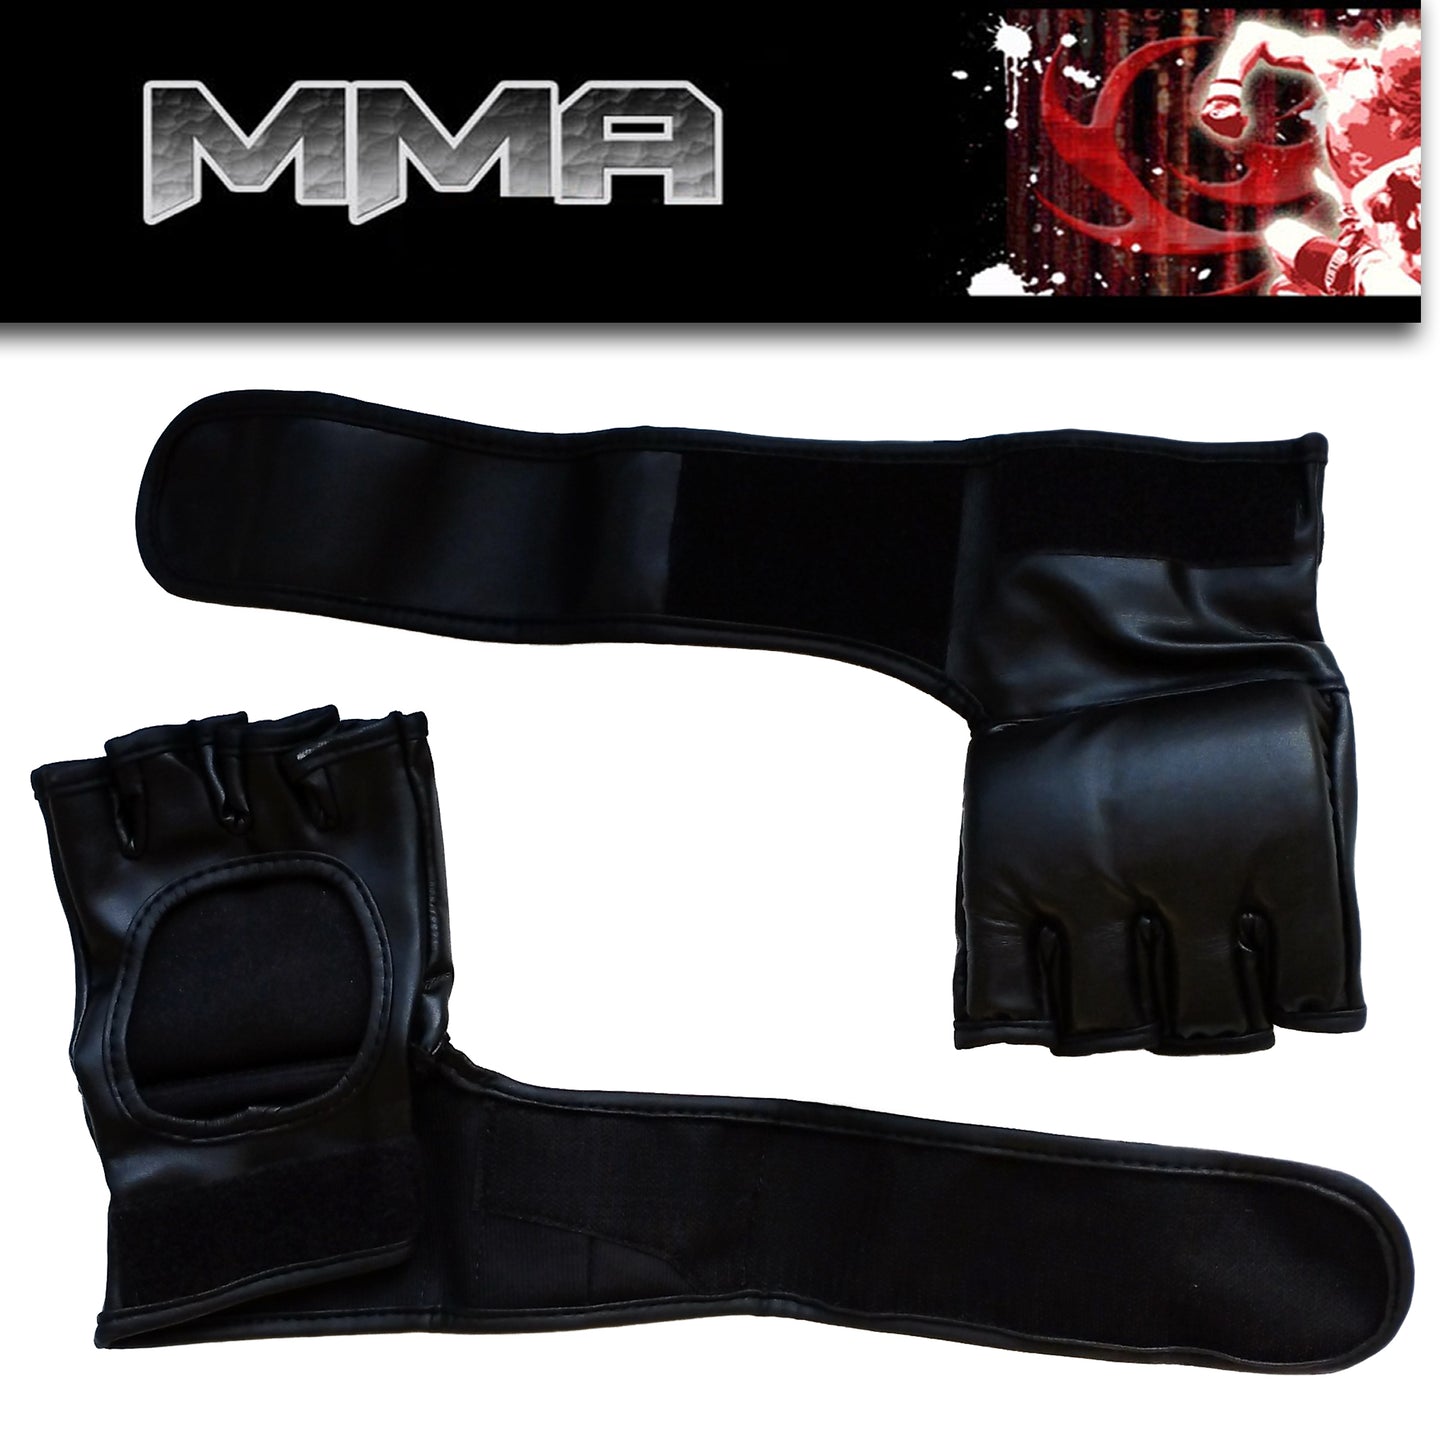 Sportech Italia - Guanti MMA Arti Marziali, guanti Cardio Boxe e Fit Boxe, allenamento guanti da sacco - Punto Fitness